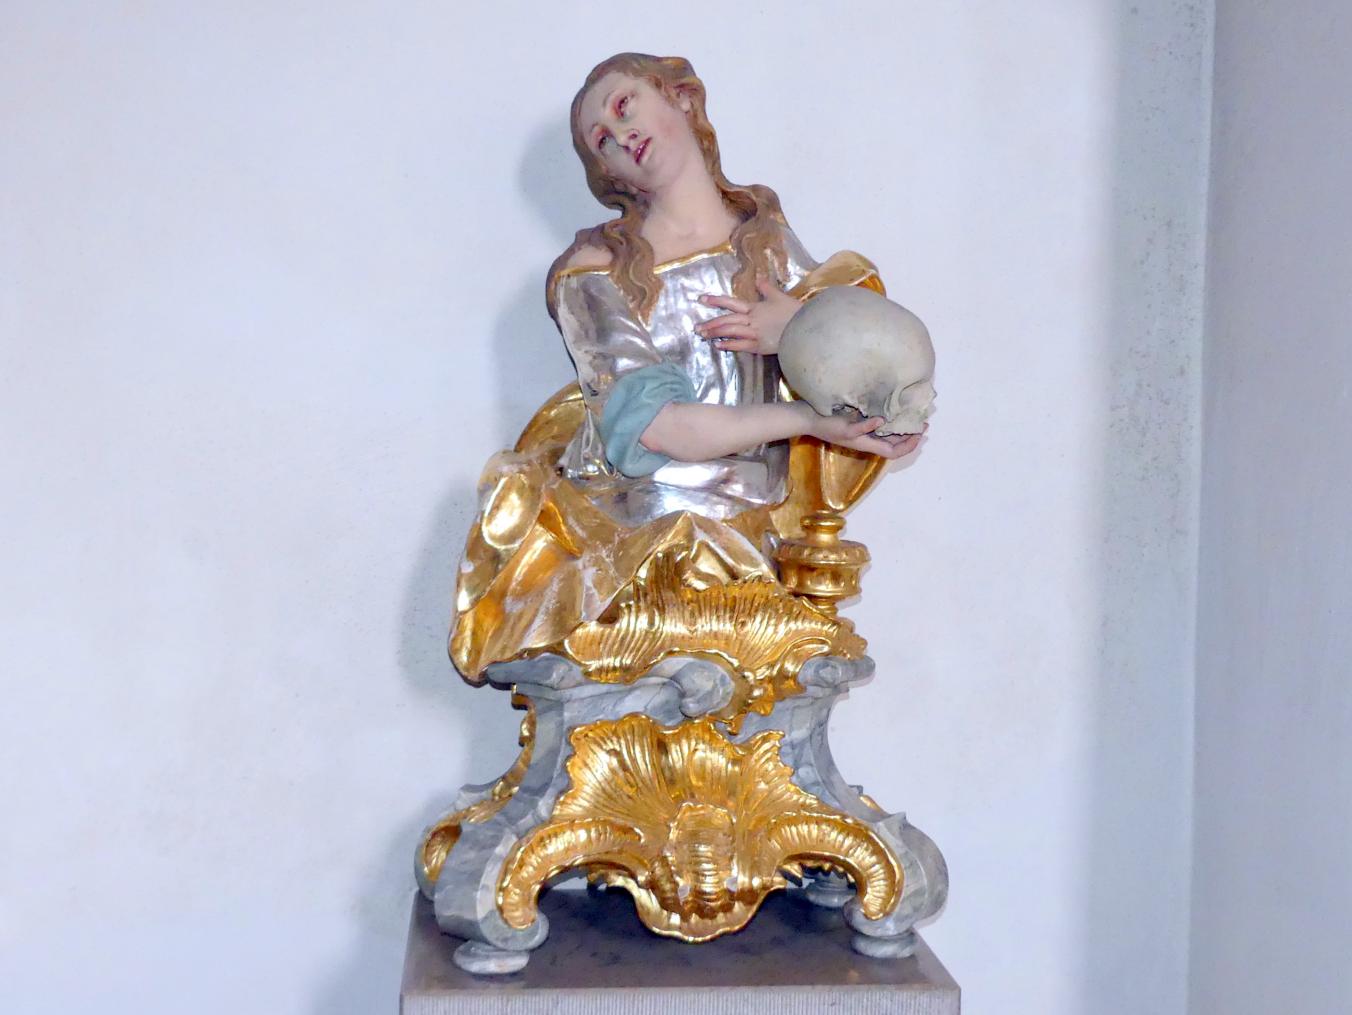 Christian Jorhan der Ältere (1750–1802), Büste der heiligen Maria Magdalena, Pfaffenberg (Mallersdorf), Pfarrkirche St. Peter, um 1760, Bild 1/2